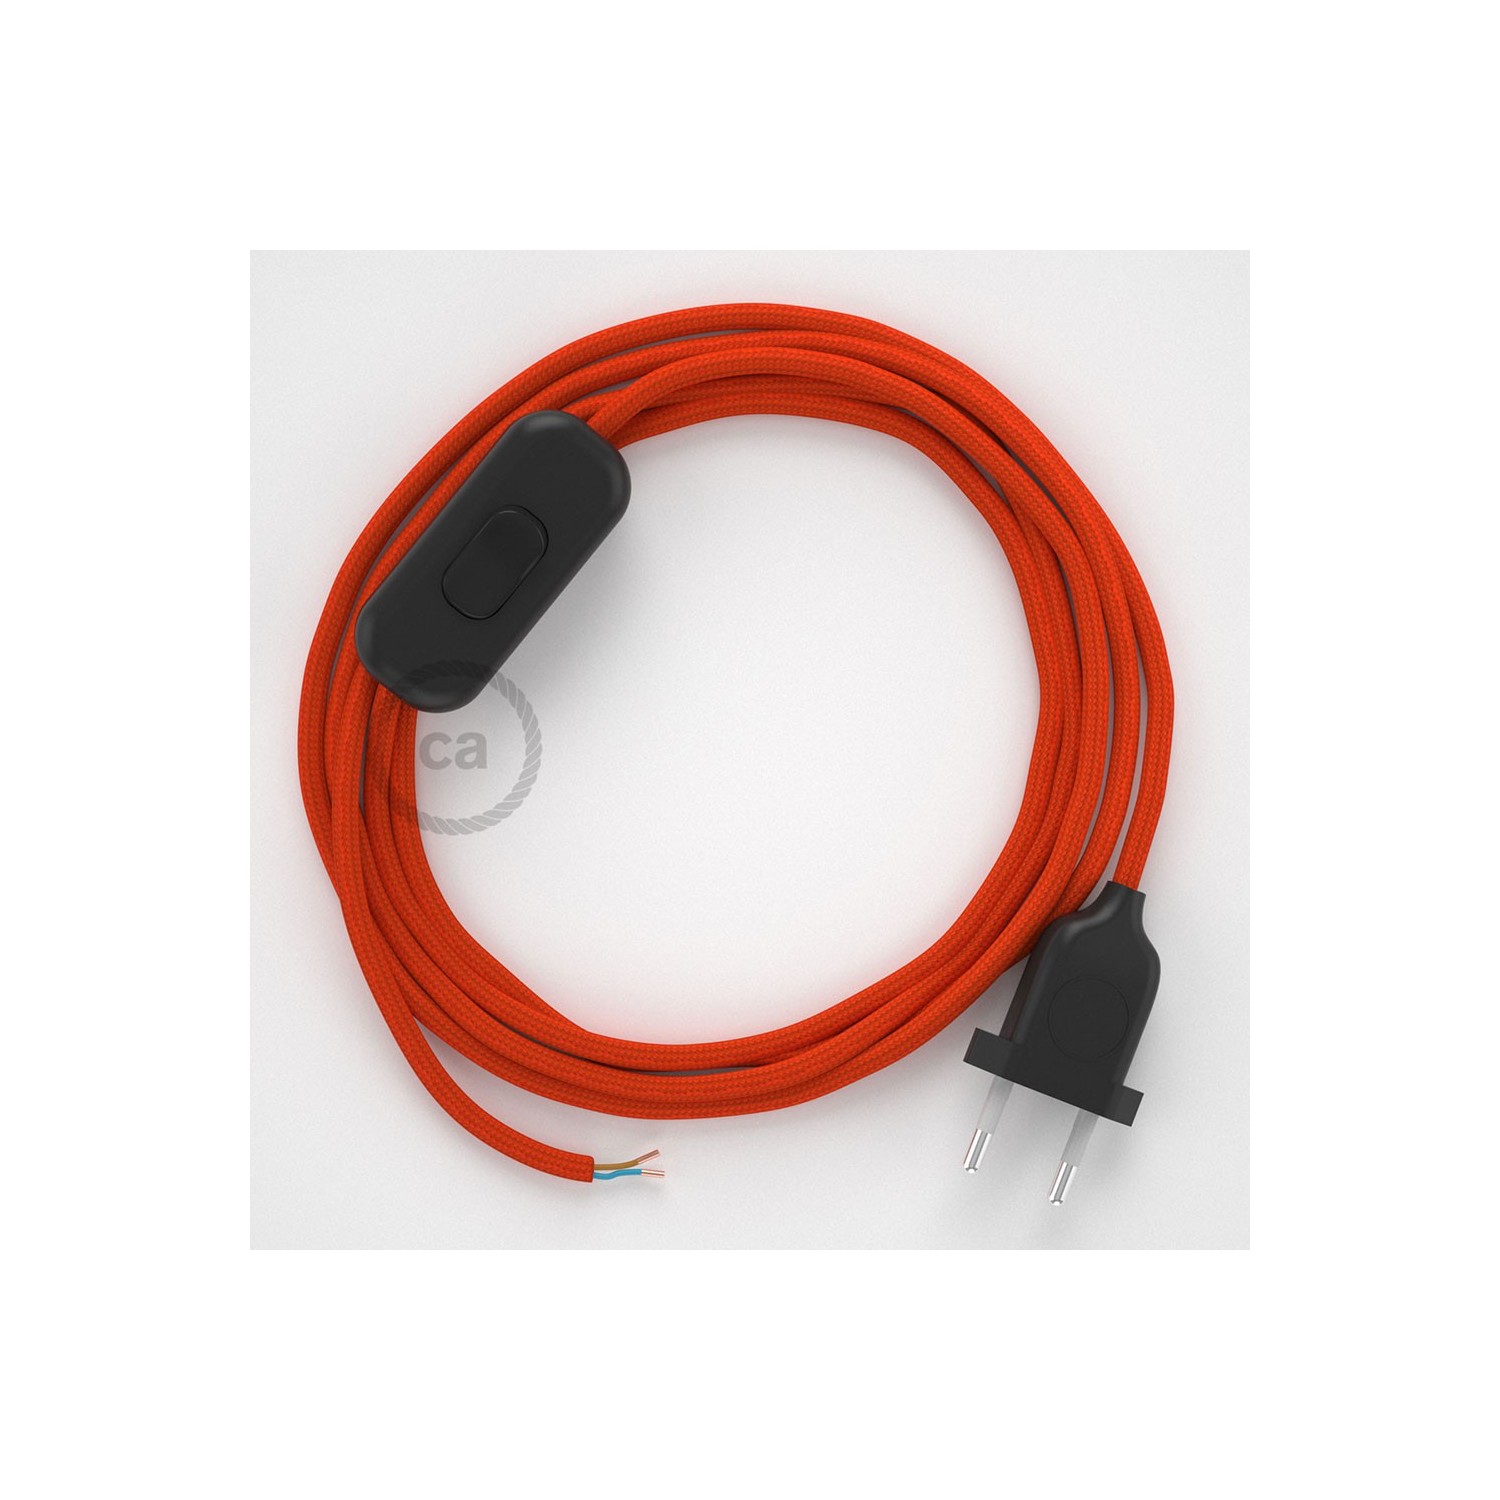 Cordon pour lampe, câble RM15 Effet Soie Orange 1,80 m. Choisissez la couleur de la fiche et de l'interrupteur!